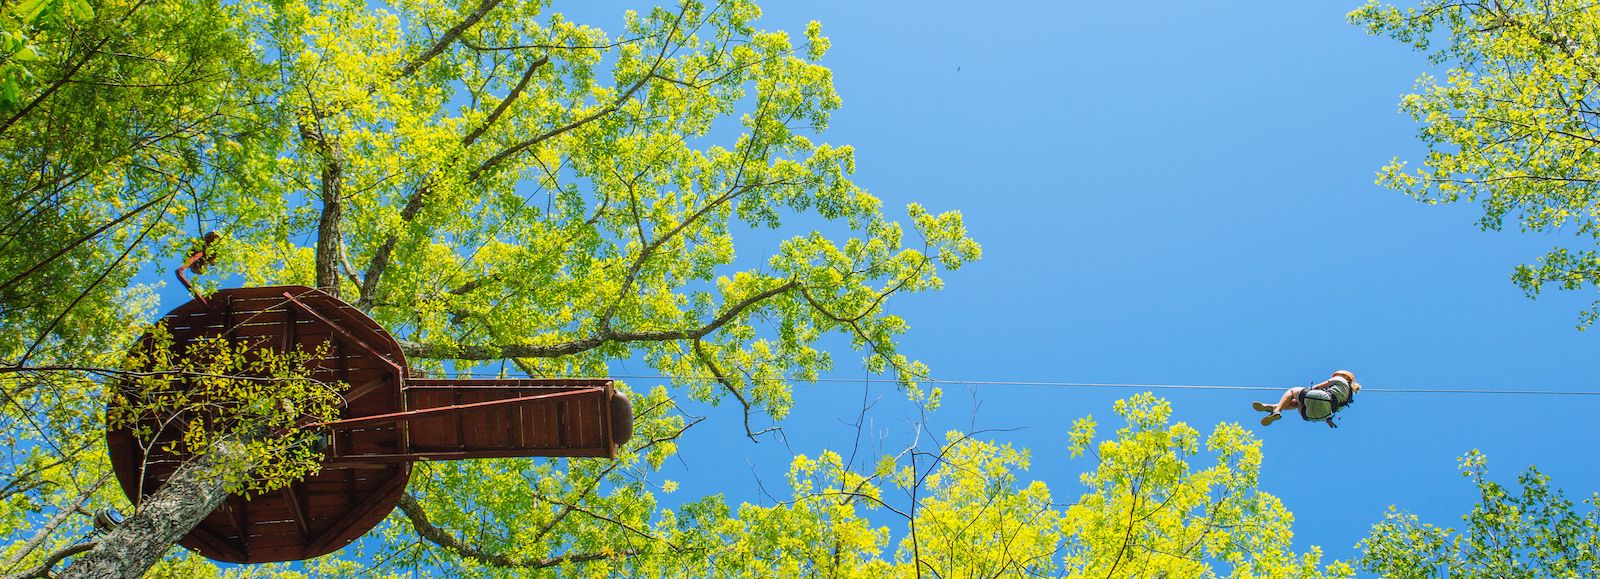 All About One of The Best Ziplines in Gatlinburg: Treetop Zipline Tour